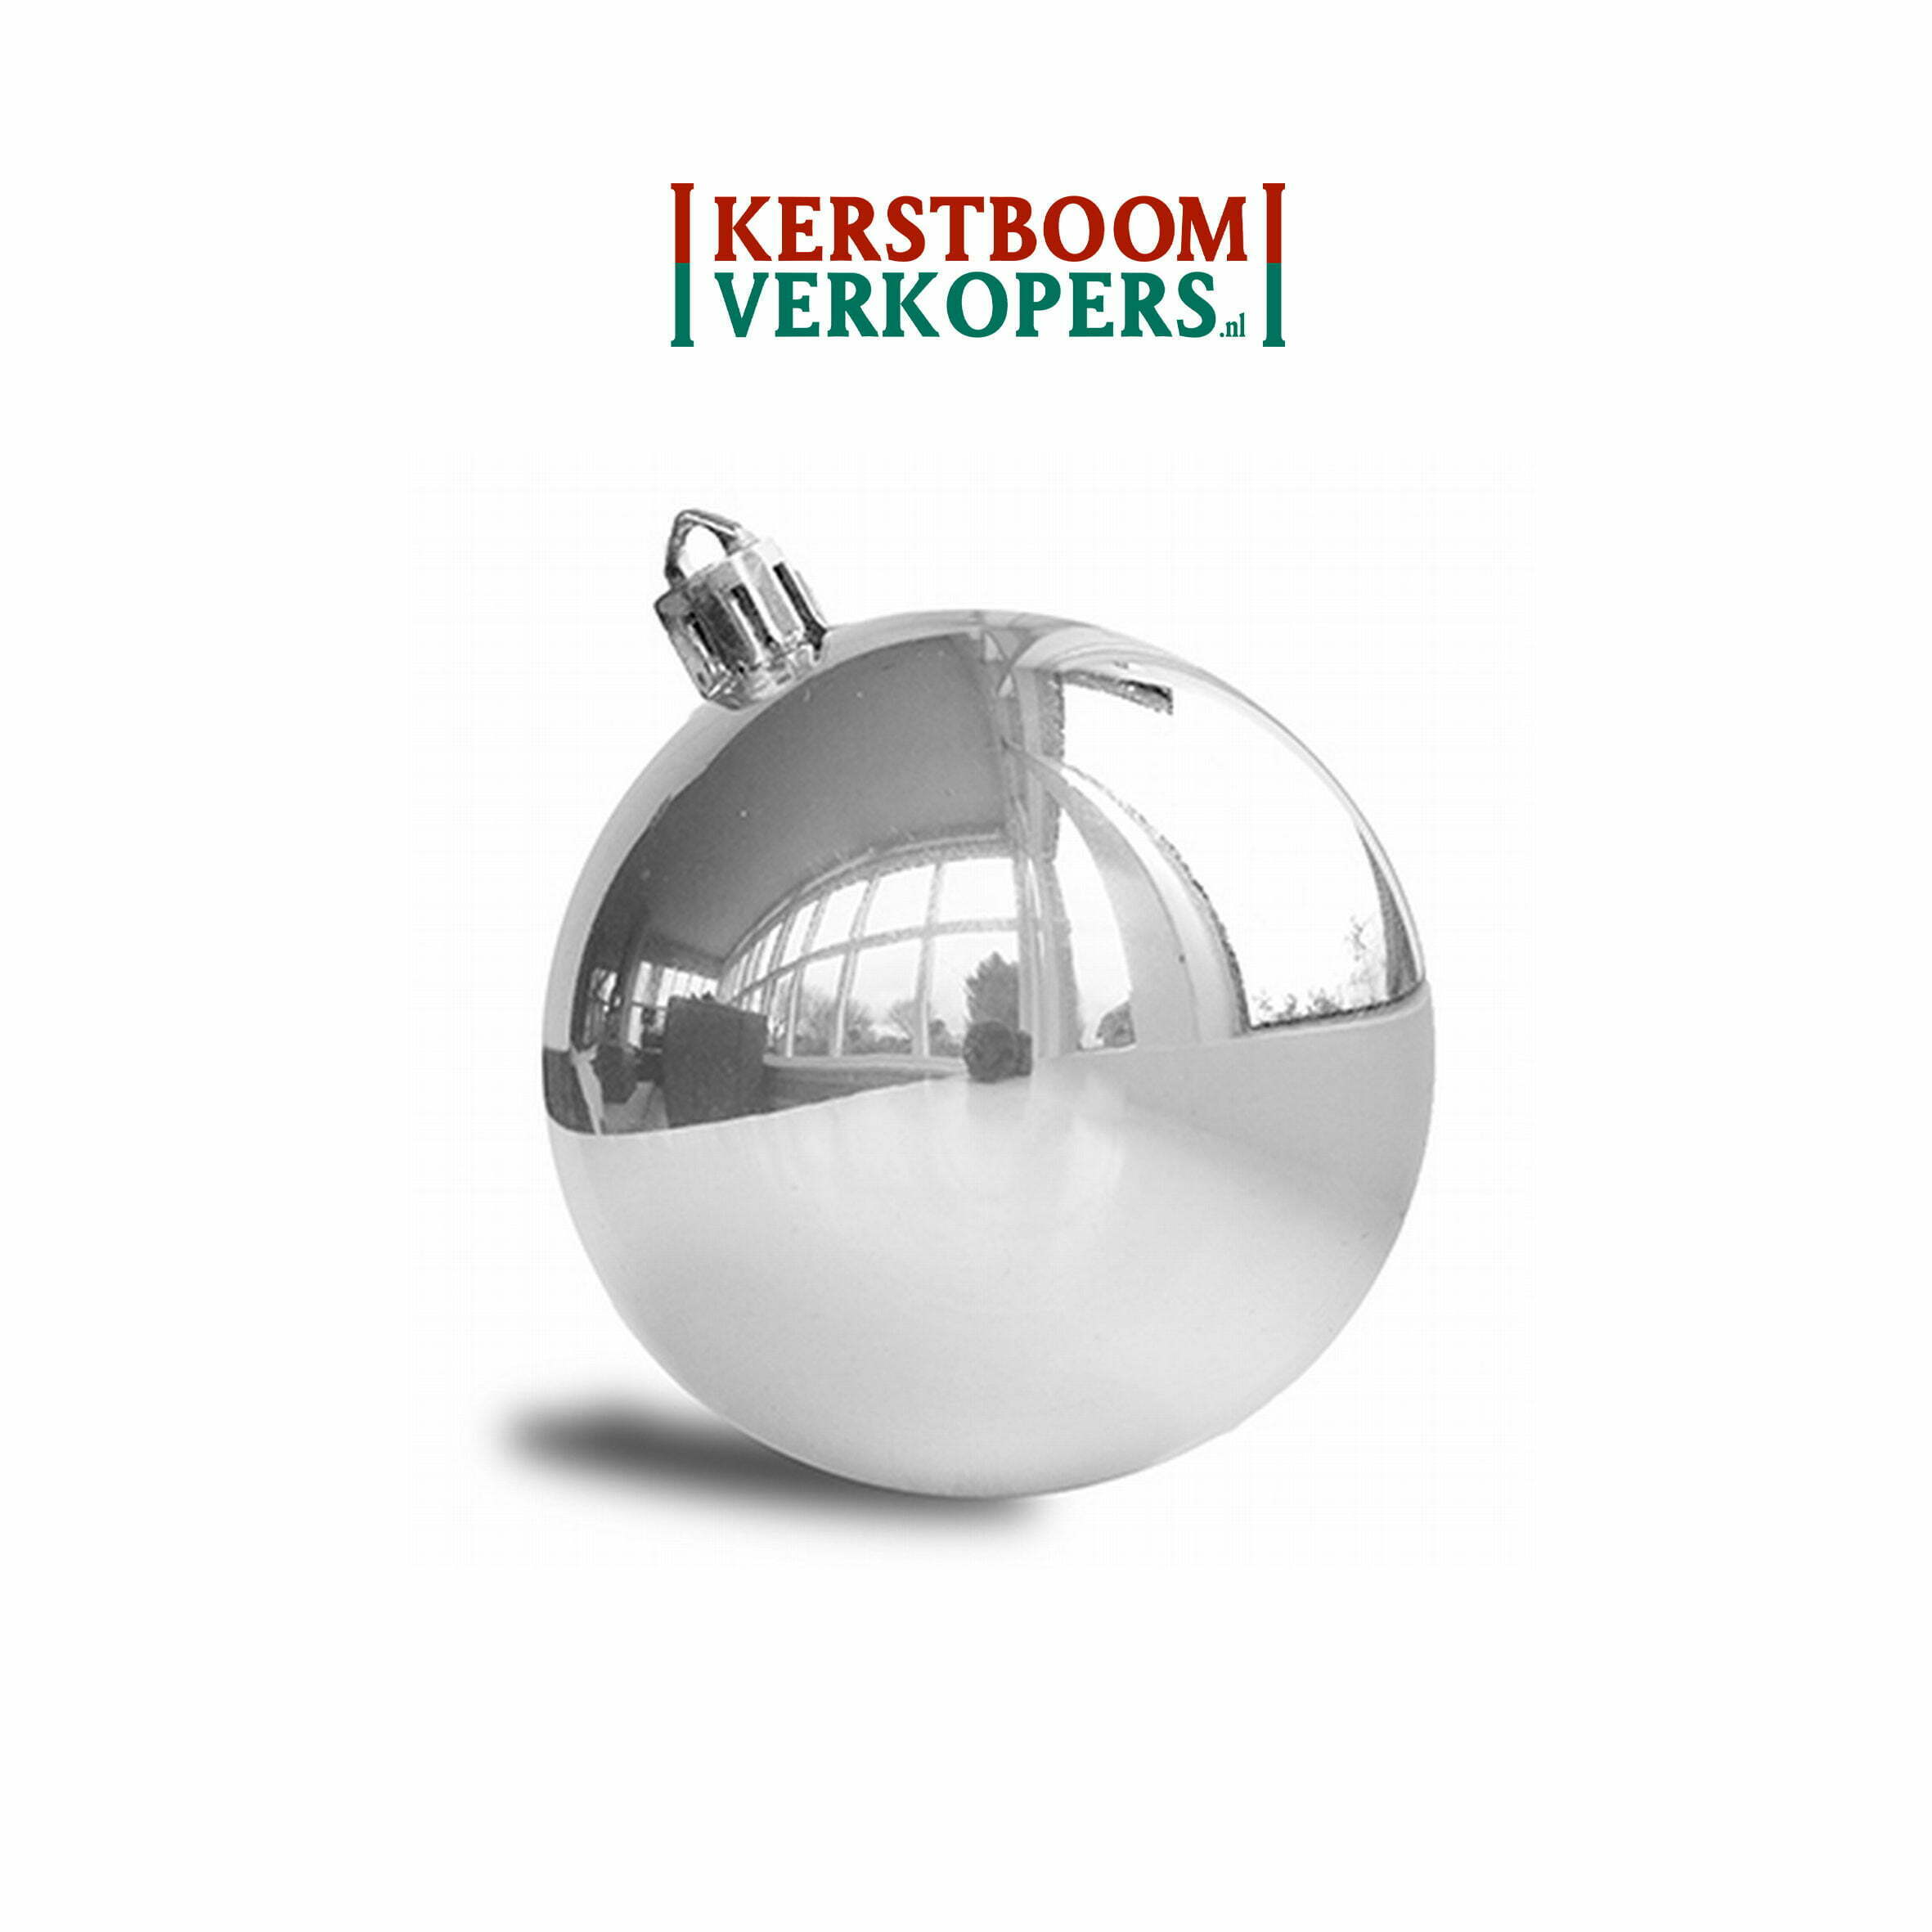 Bevestiging verbrand Commandant Kerstballen zilver (glans) - 8cm - €99,- per st. - Kerstboomverkopers.nl